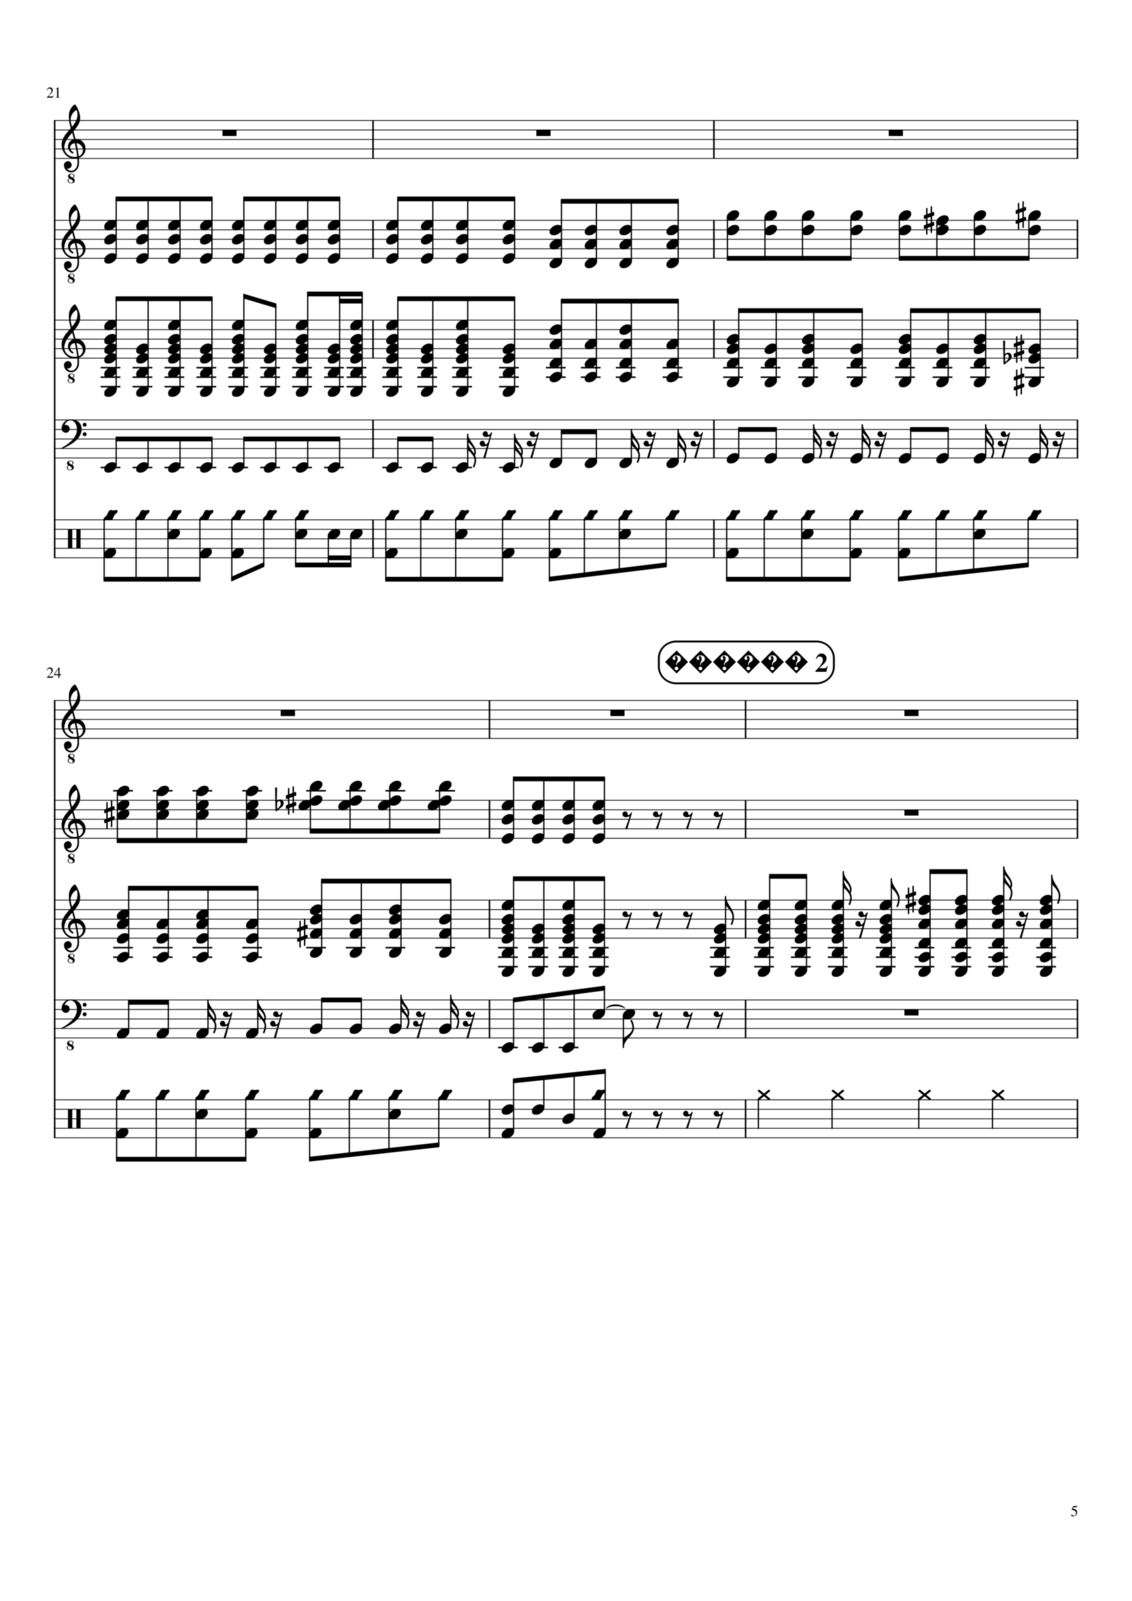 Vechnaya molodost slide, Image 5